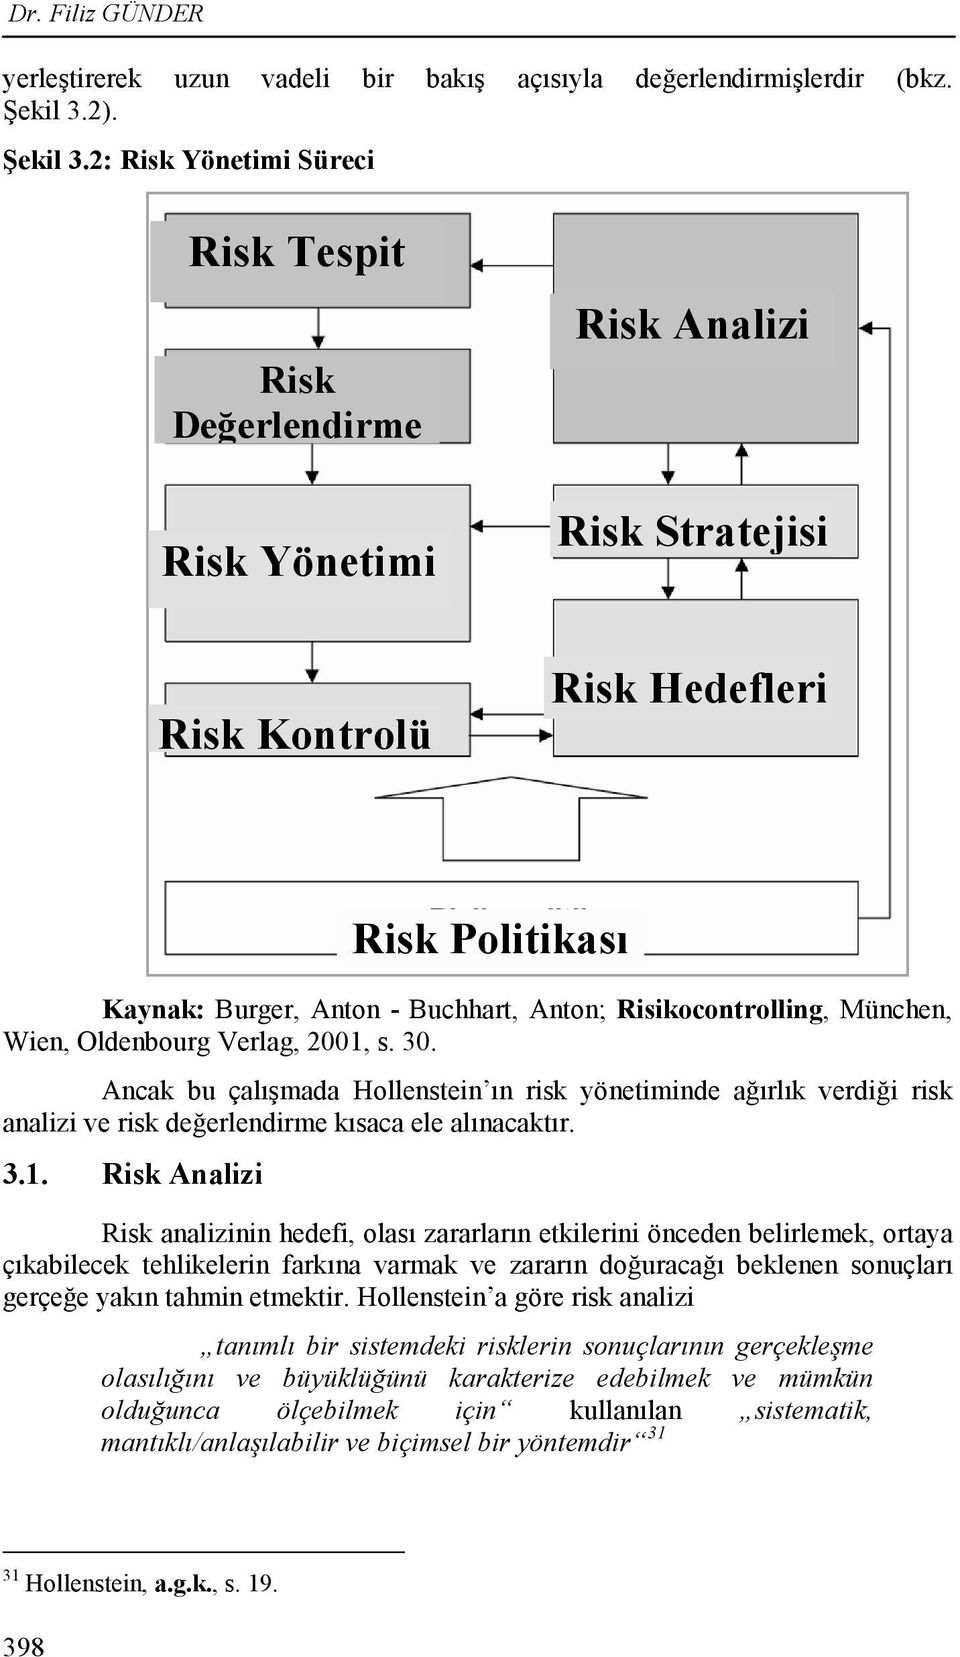 2: Risk Yönetimi Süreci Risk Tespit Risk Değerlendirme Risk Yönetimi Risk Analizi Risk Stratejisi Risk Kontrolü Risk Hedefleri Kaynak: Burger, Anton - Buchhart, Anton; Risikocontrolling, München,